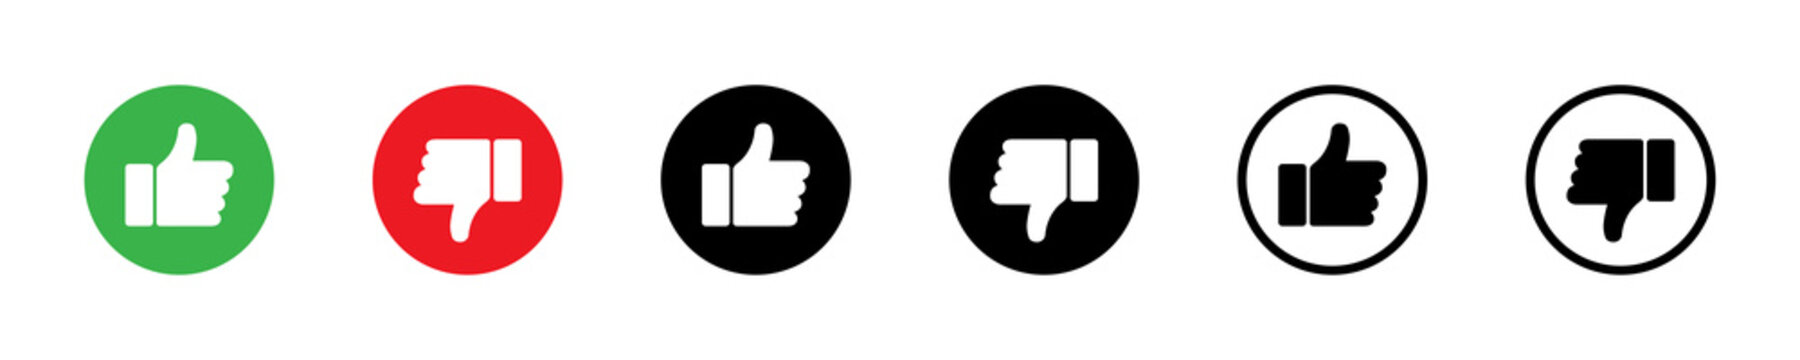 Thumb up, thumb down icon. Like, dislike icons. Social media icon